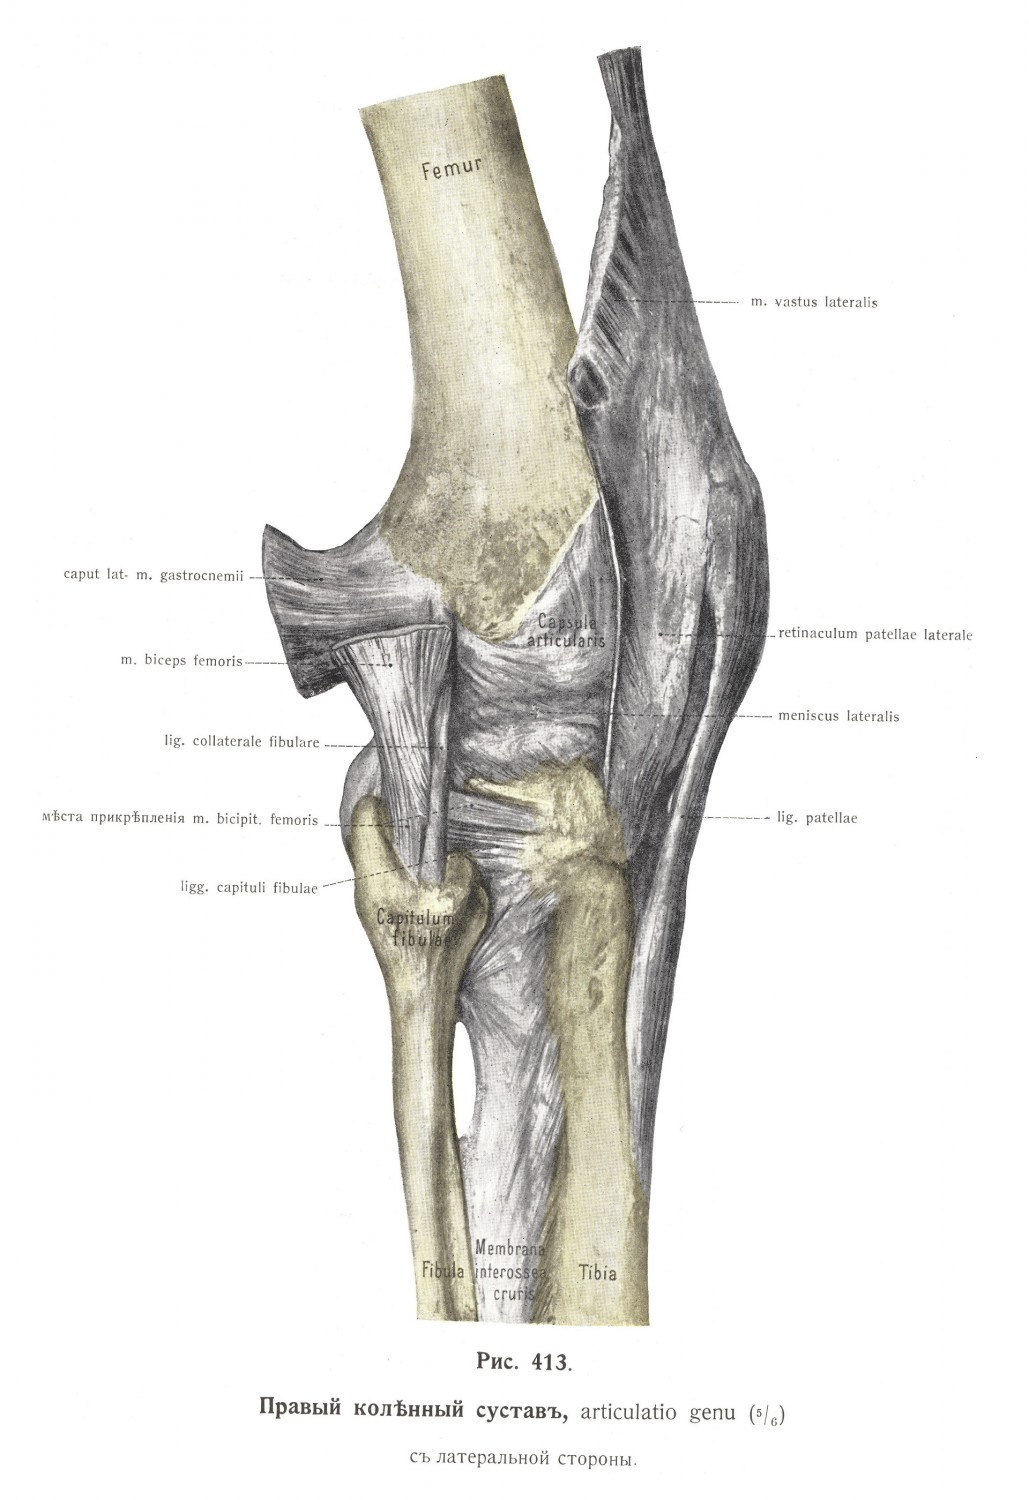 Правый коленный сустав, articulatio genu, с латеральной стороны